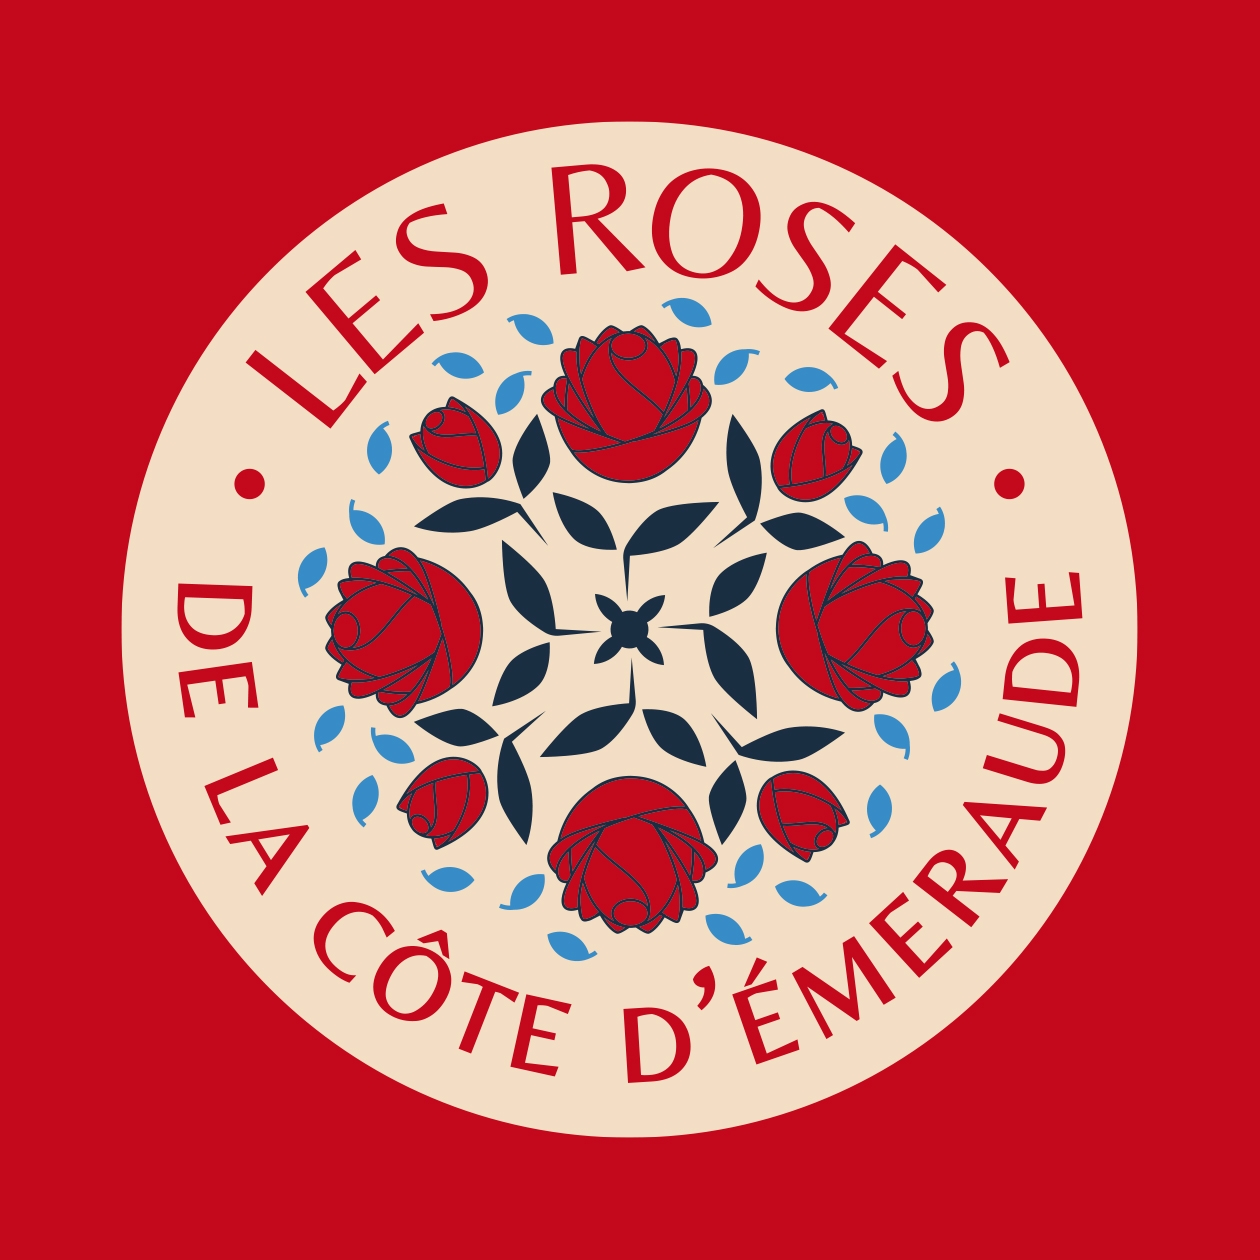 Logo Roses de la cote d’emeraude, sur fond rouge